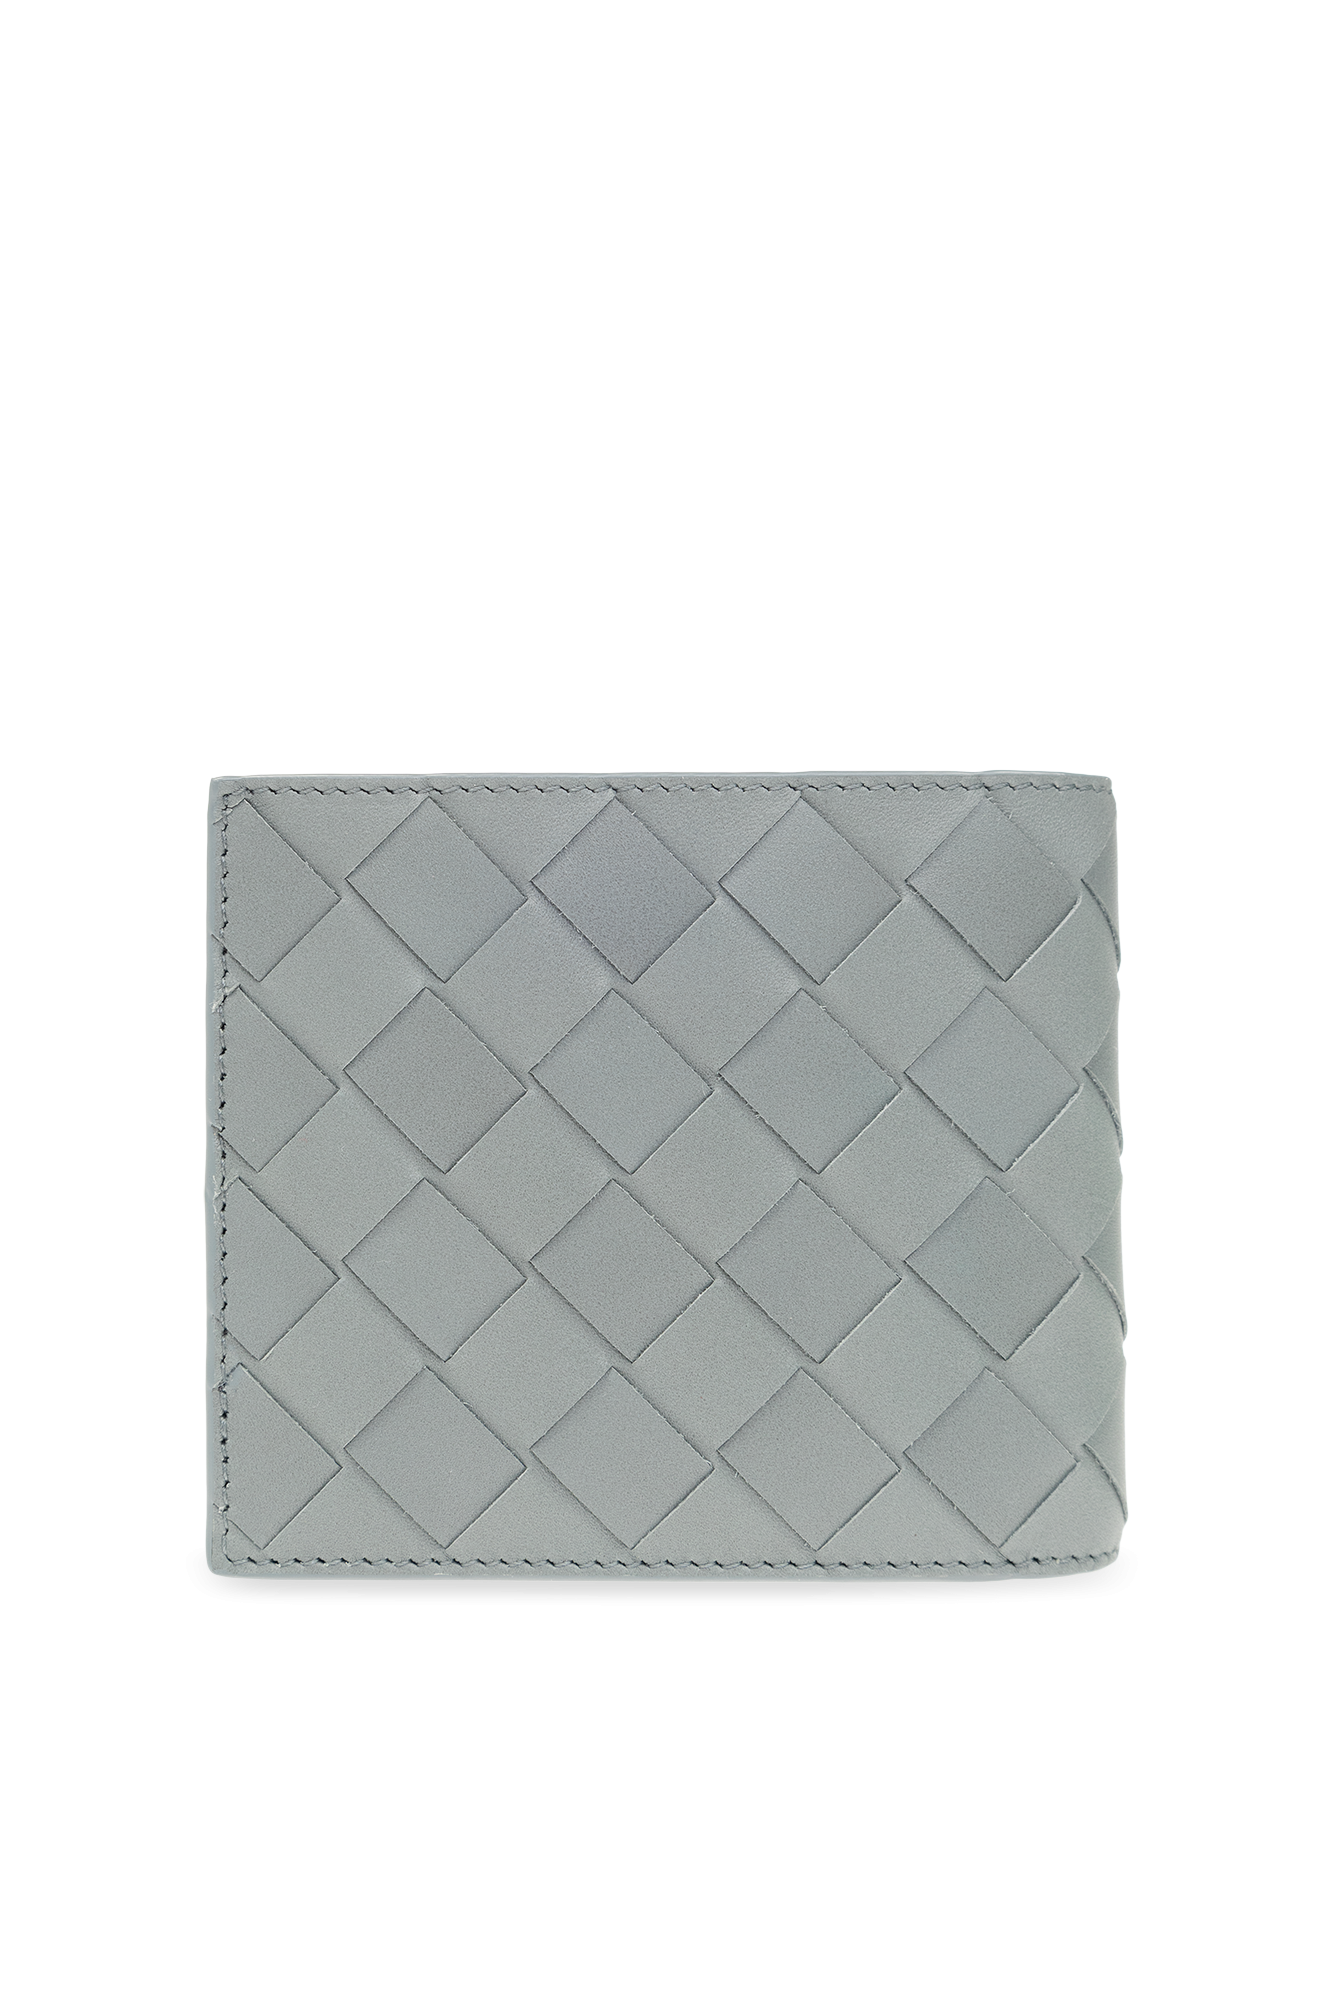 Bottega Veneta Woda folding wallet